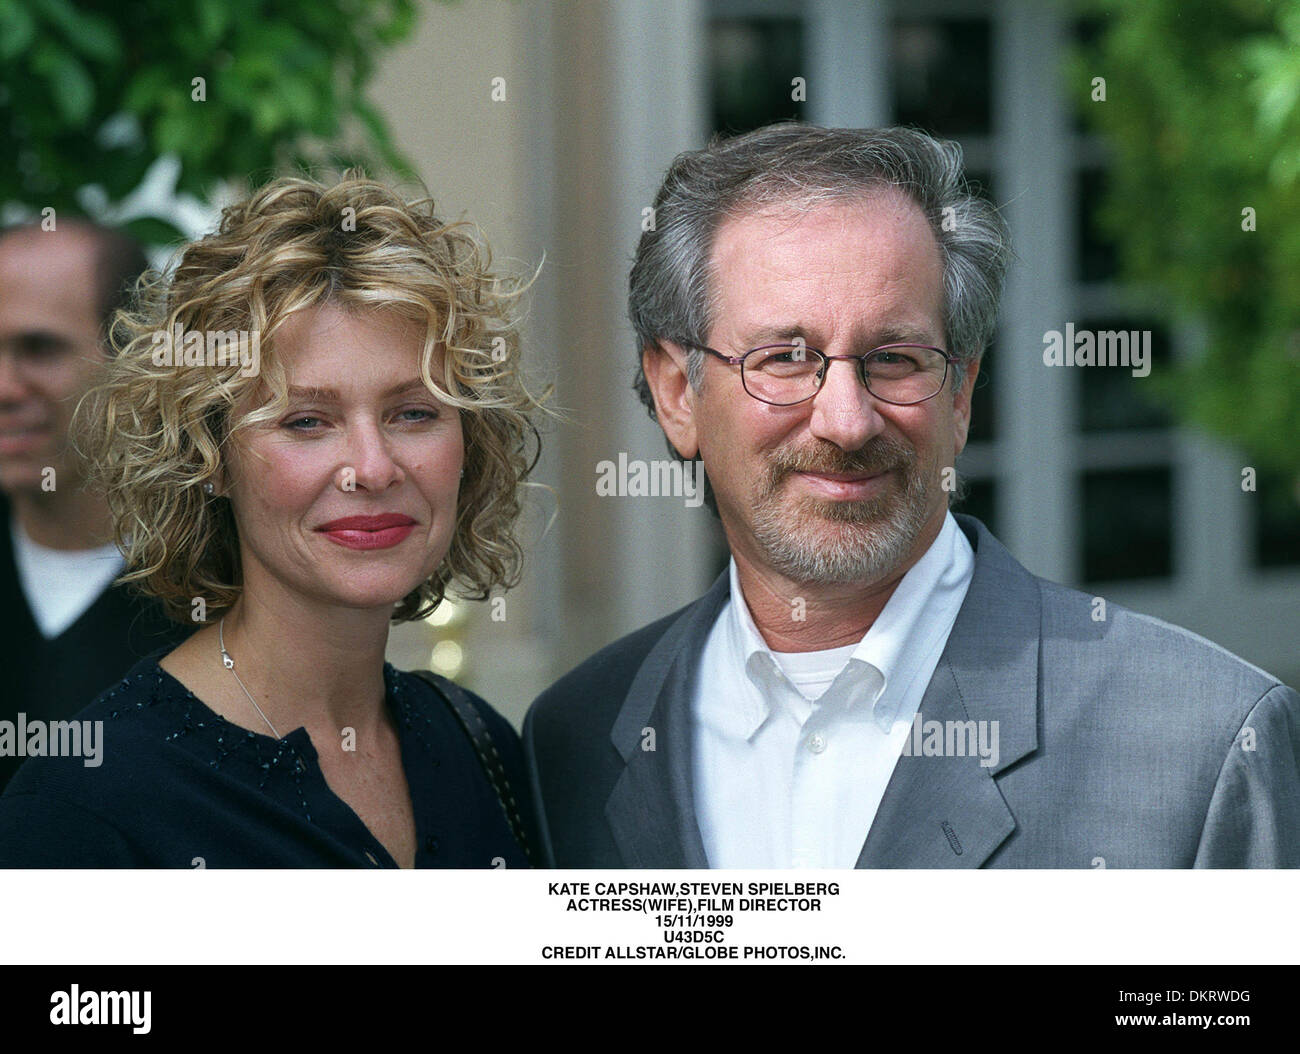 KATE CAPSHAW,STEVEN SPIELBERG.ACTRESSWIFE),FILM DIRECTOR.15/11/1999.U43D5C Stock Photo